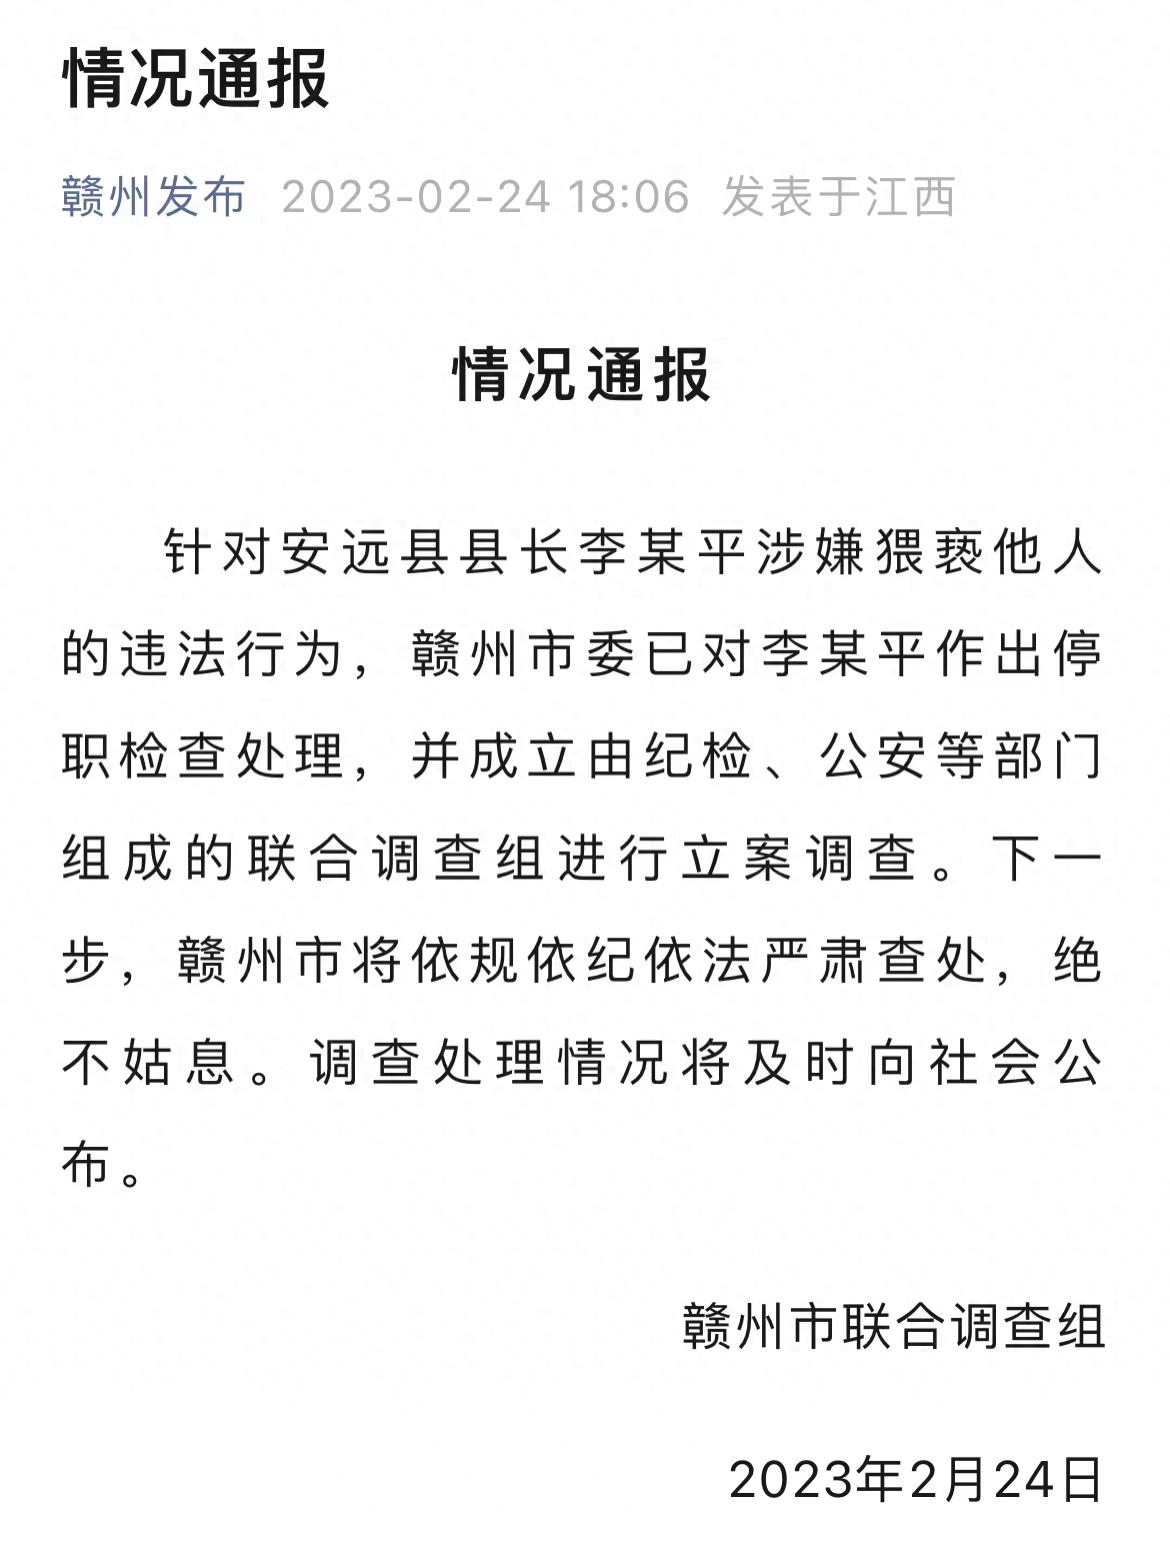 涉嫌猥亵挂职女干部的李秋平县长仍在停职 安远县至今没有县长